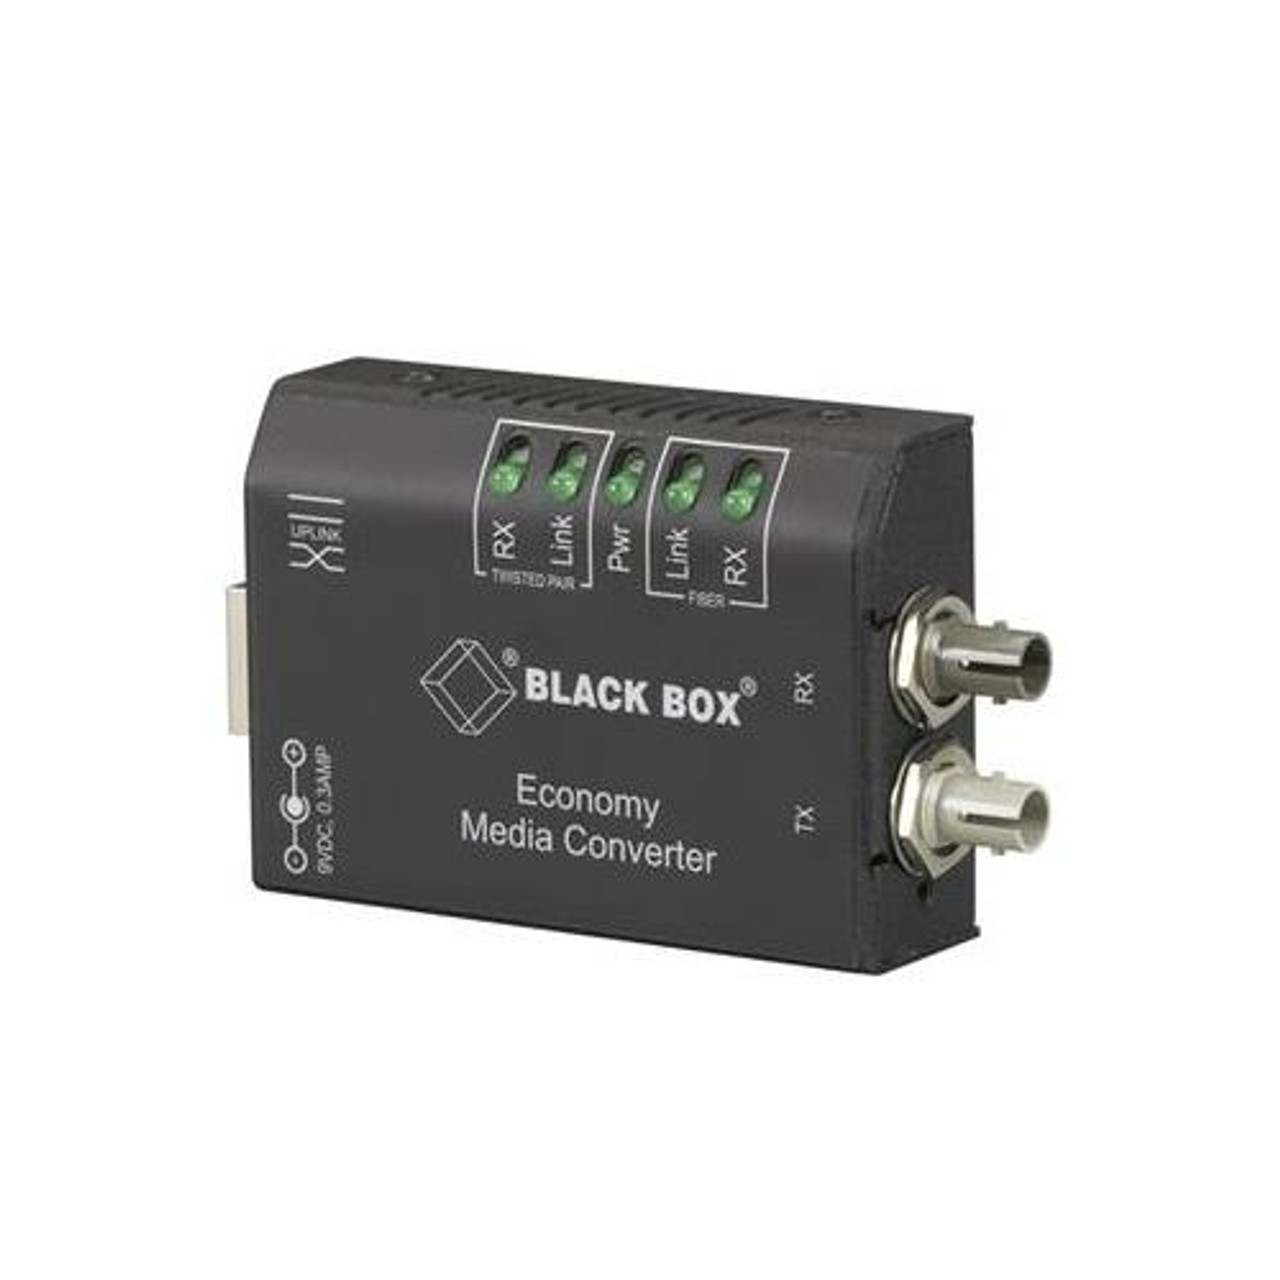 LMC622AE-LLH Black Box Flexpt Oc12ff Convts Atm Oc-12 Fiber Lx/mm/sc